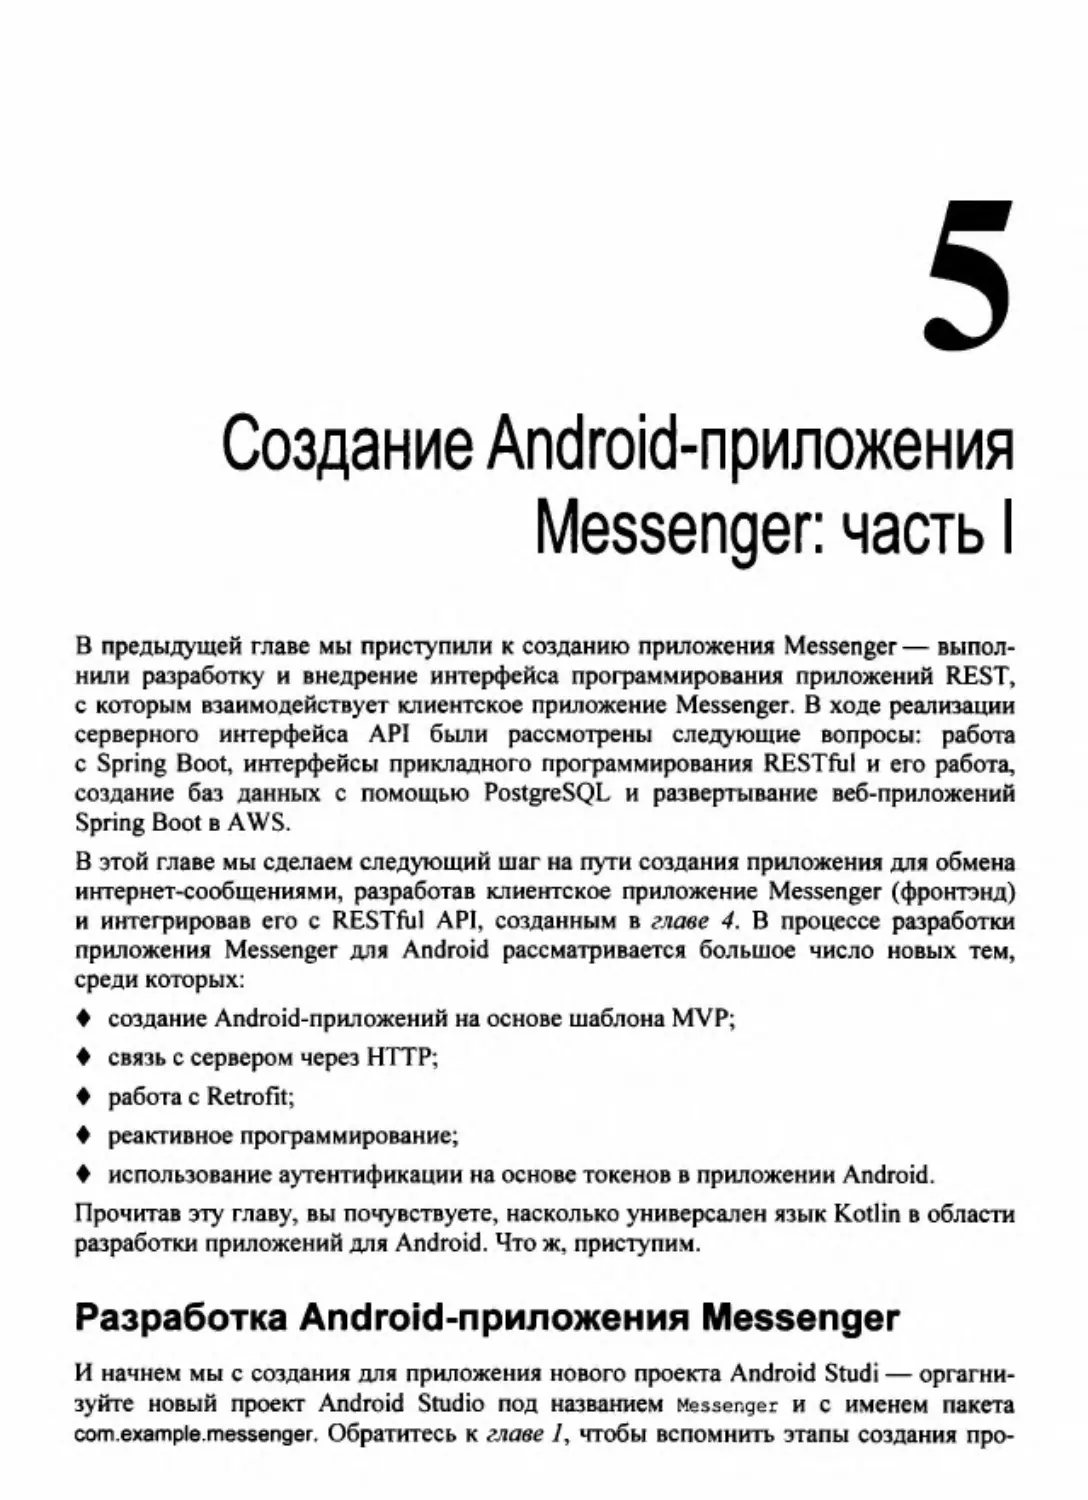 Глава 5. Создание Android-приложения Messenger: часть 1